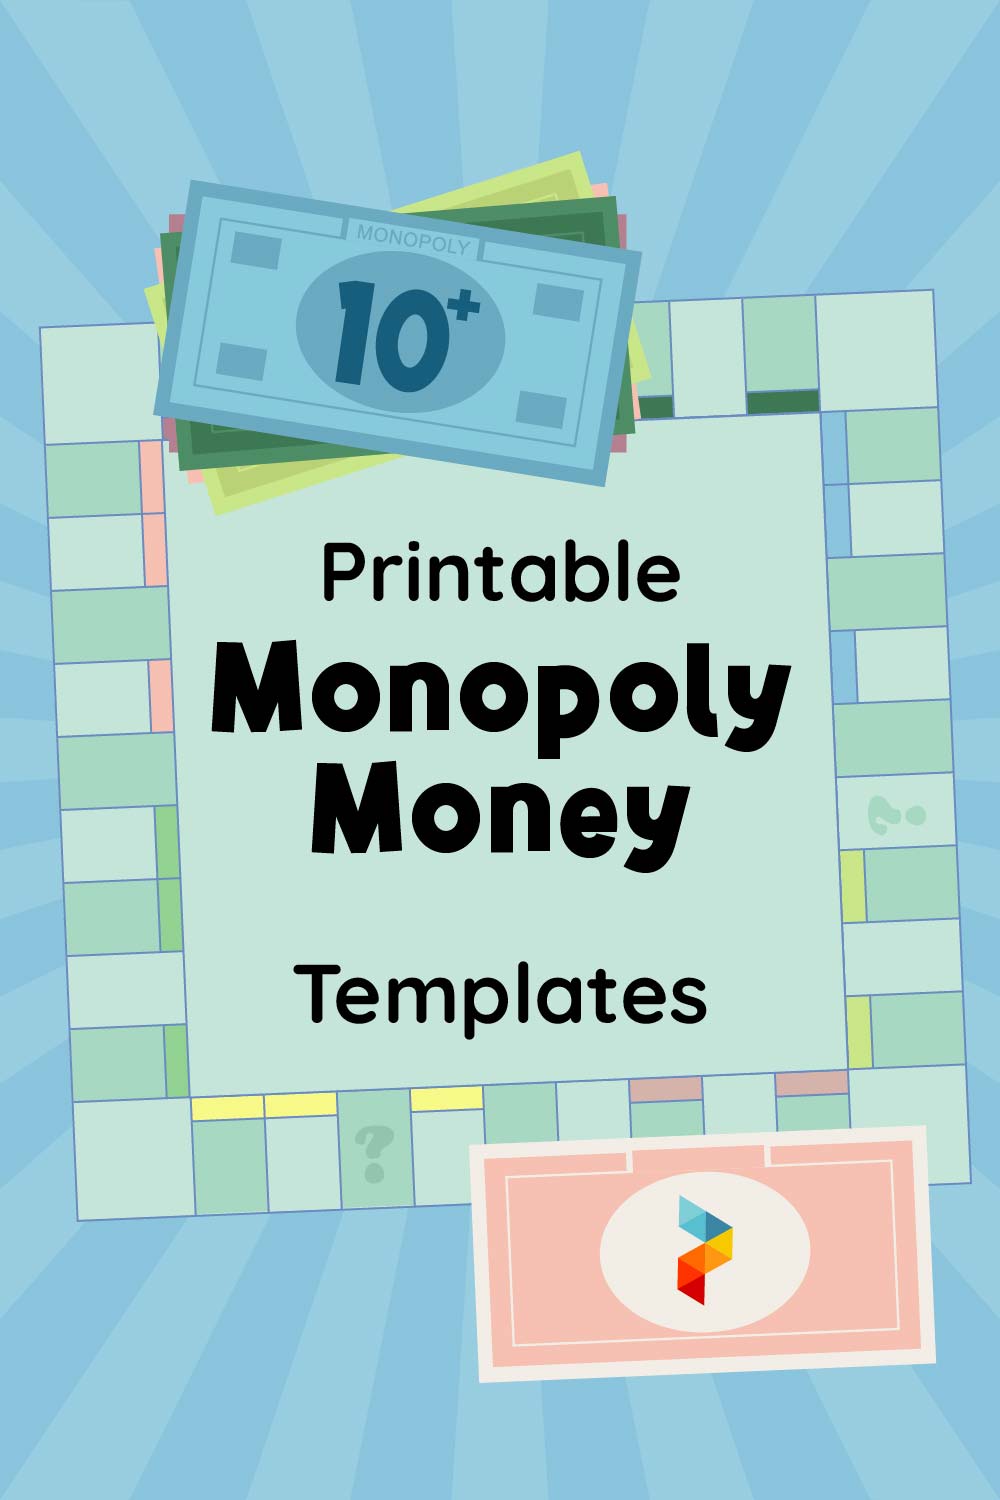 Monopoly Money Templates